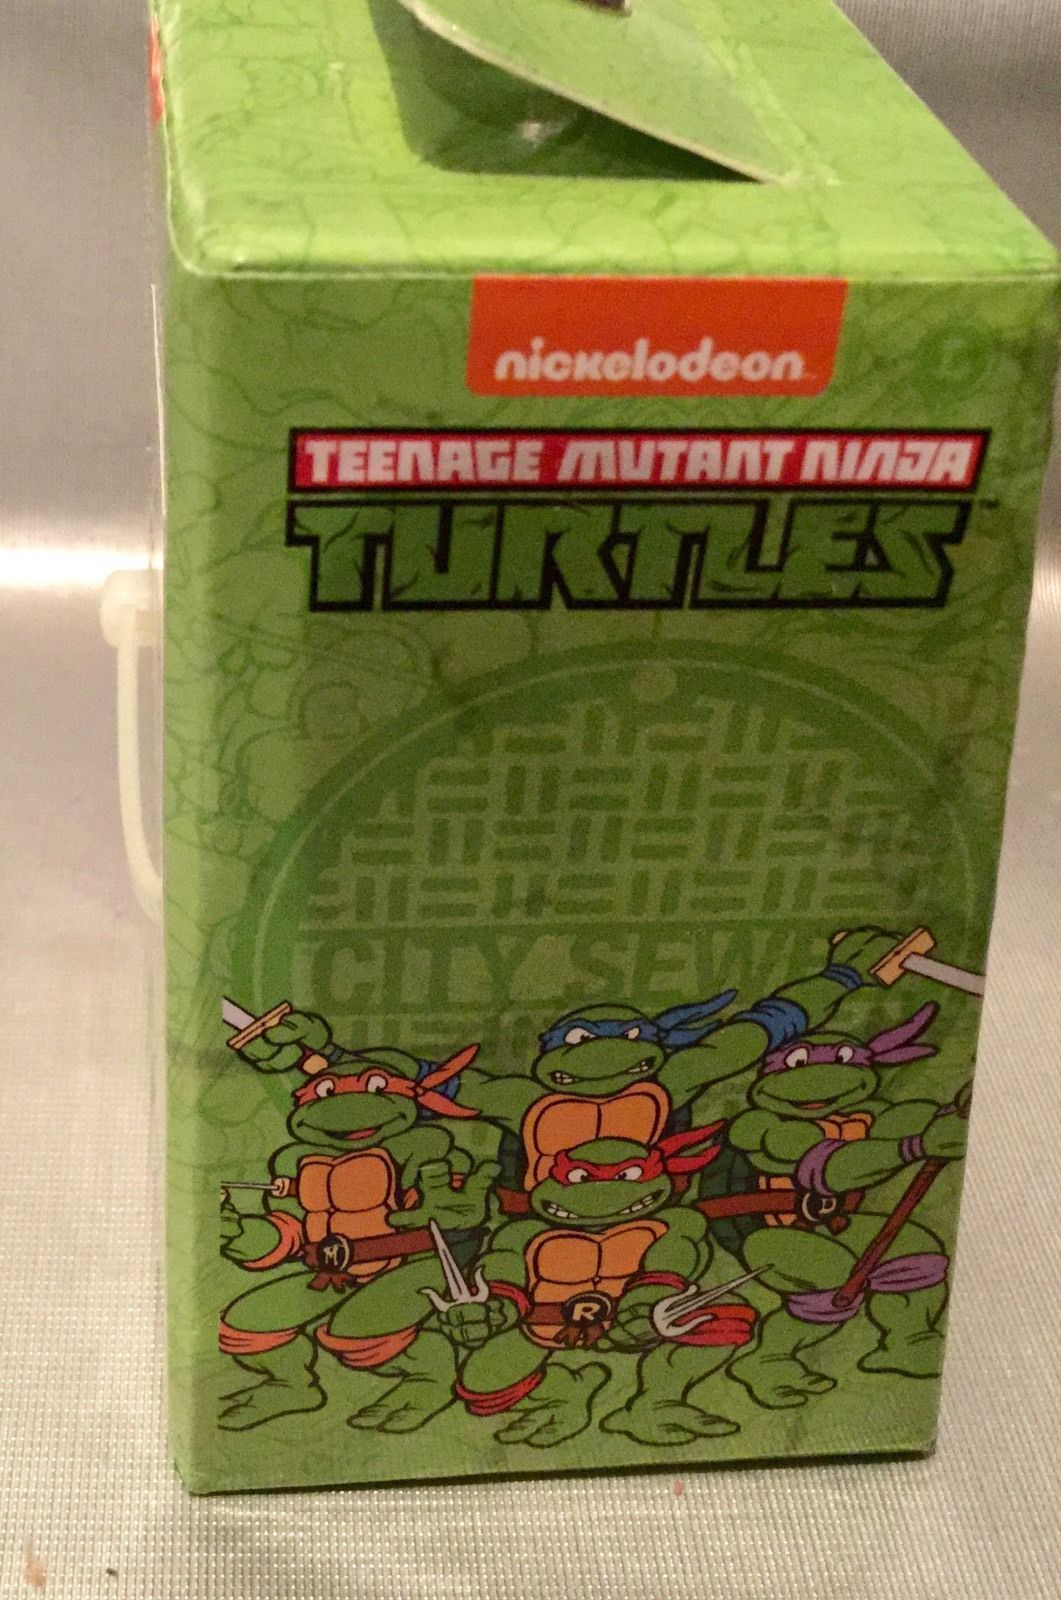 Nickelodeon Teenage Mutant Ninja Turtles Watch Children's Unisex LCD Light  Up